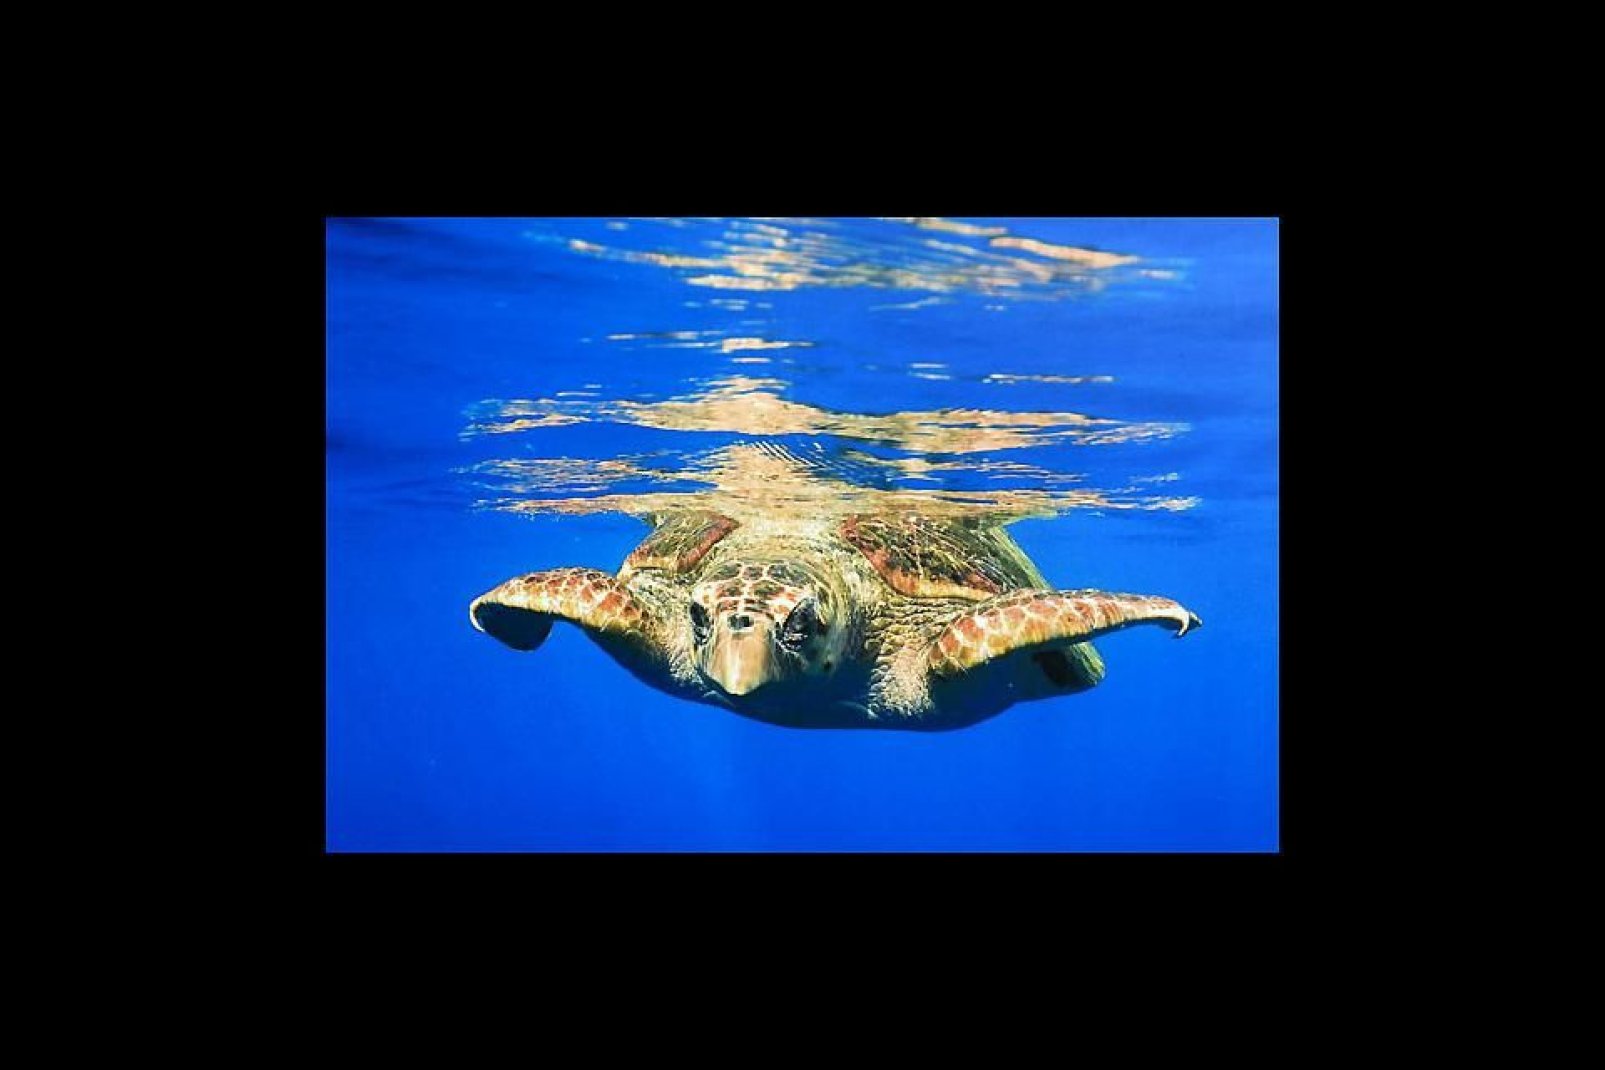 Es un ecomuseo donde se puede observar cómo viven las tortugas marinas y los tiburones en grandes piscinas al aire libre. Ayuda a conservar muchas especies amenazadas